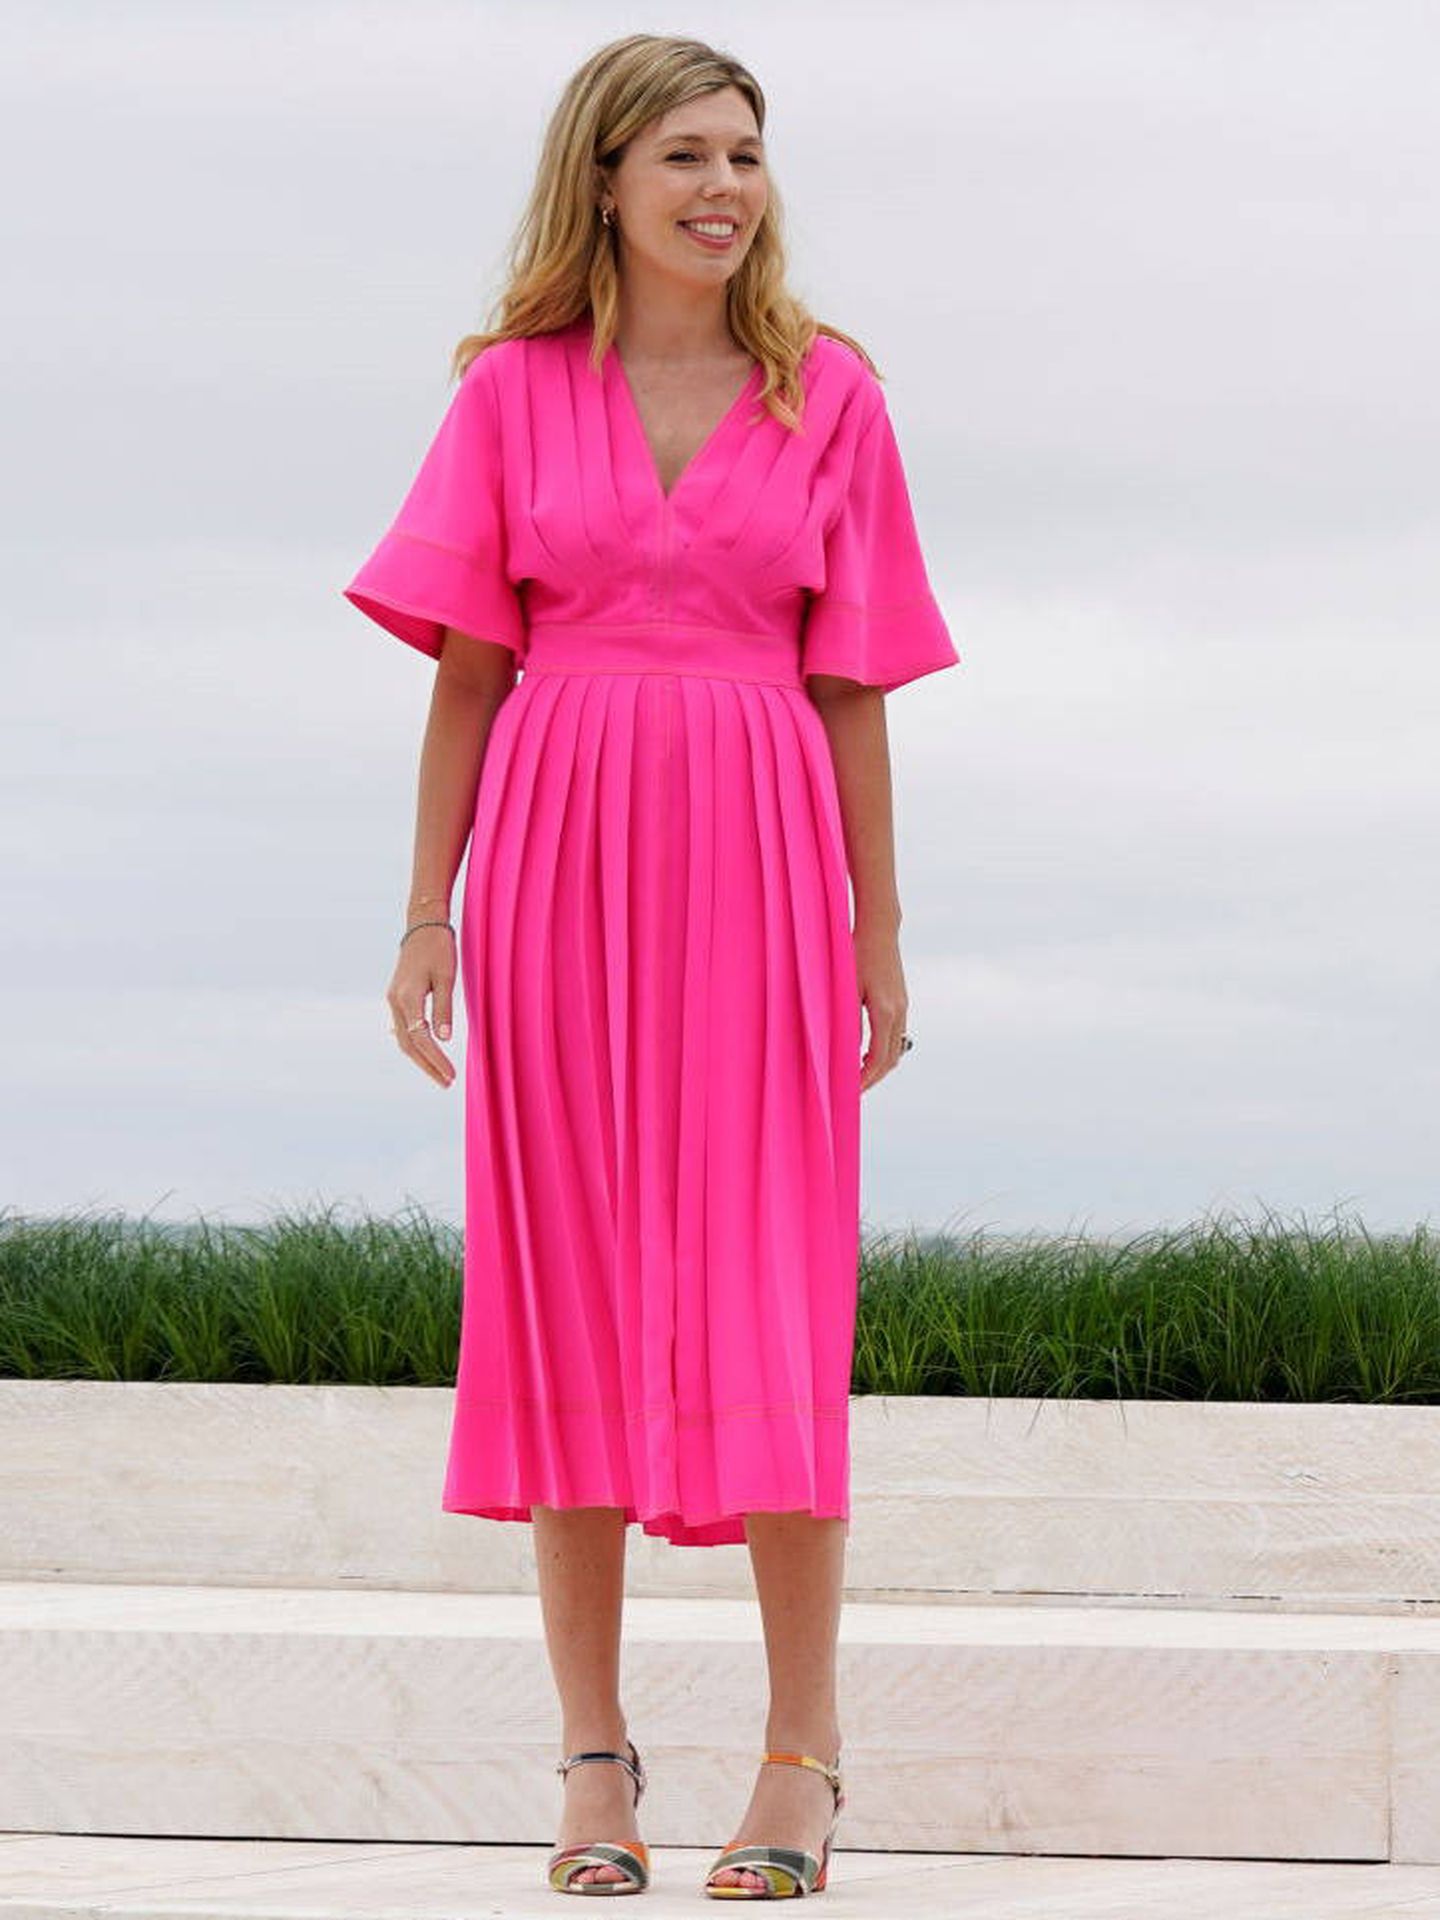 Carrie luce un vestido de alquiler de Roksanda. (Reuters)